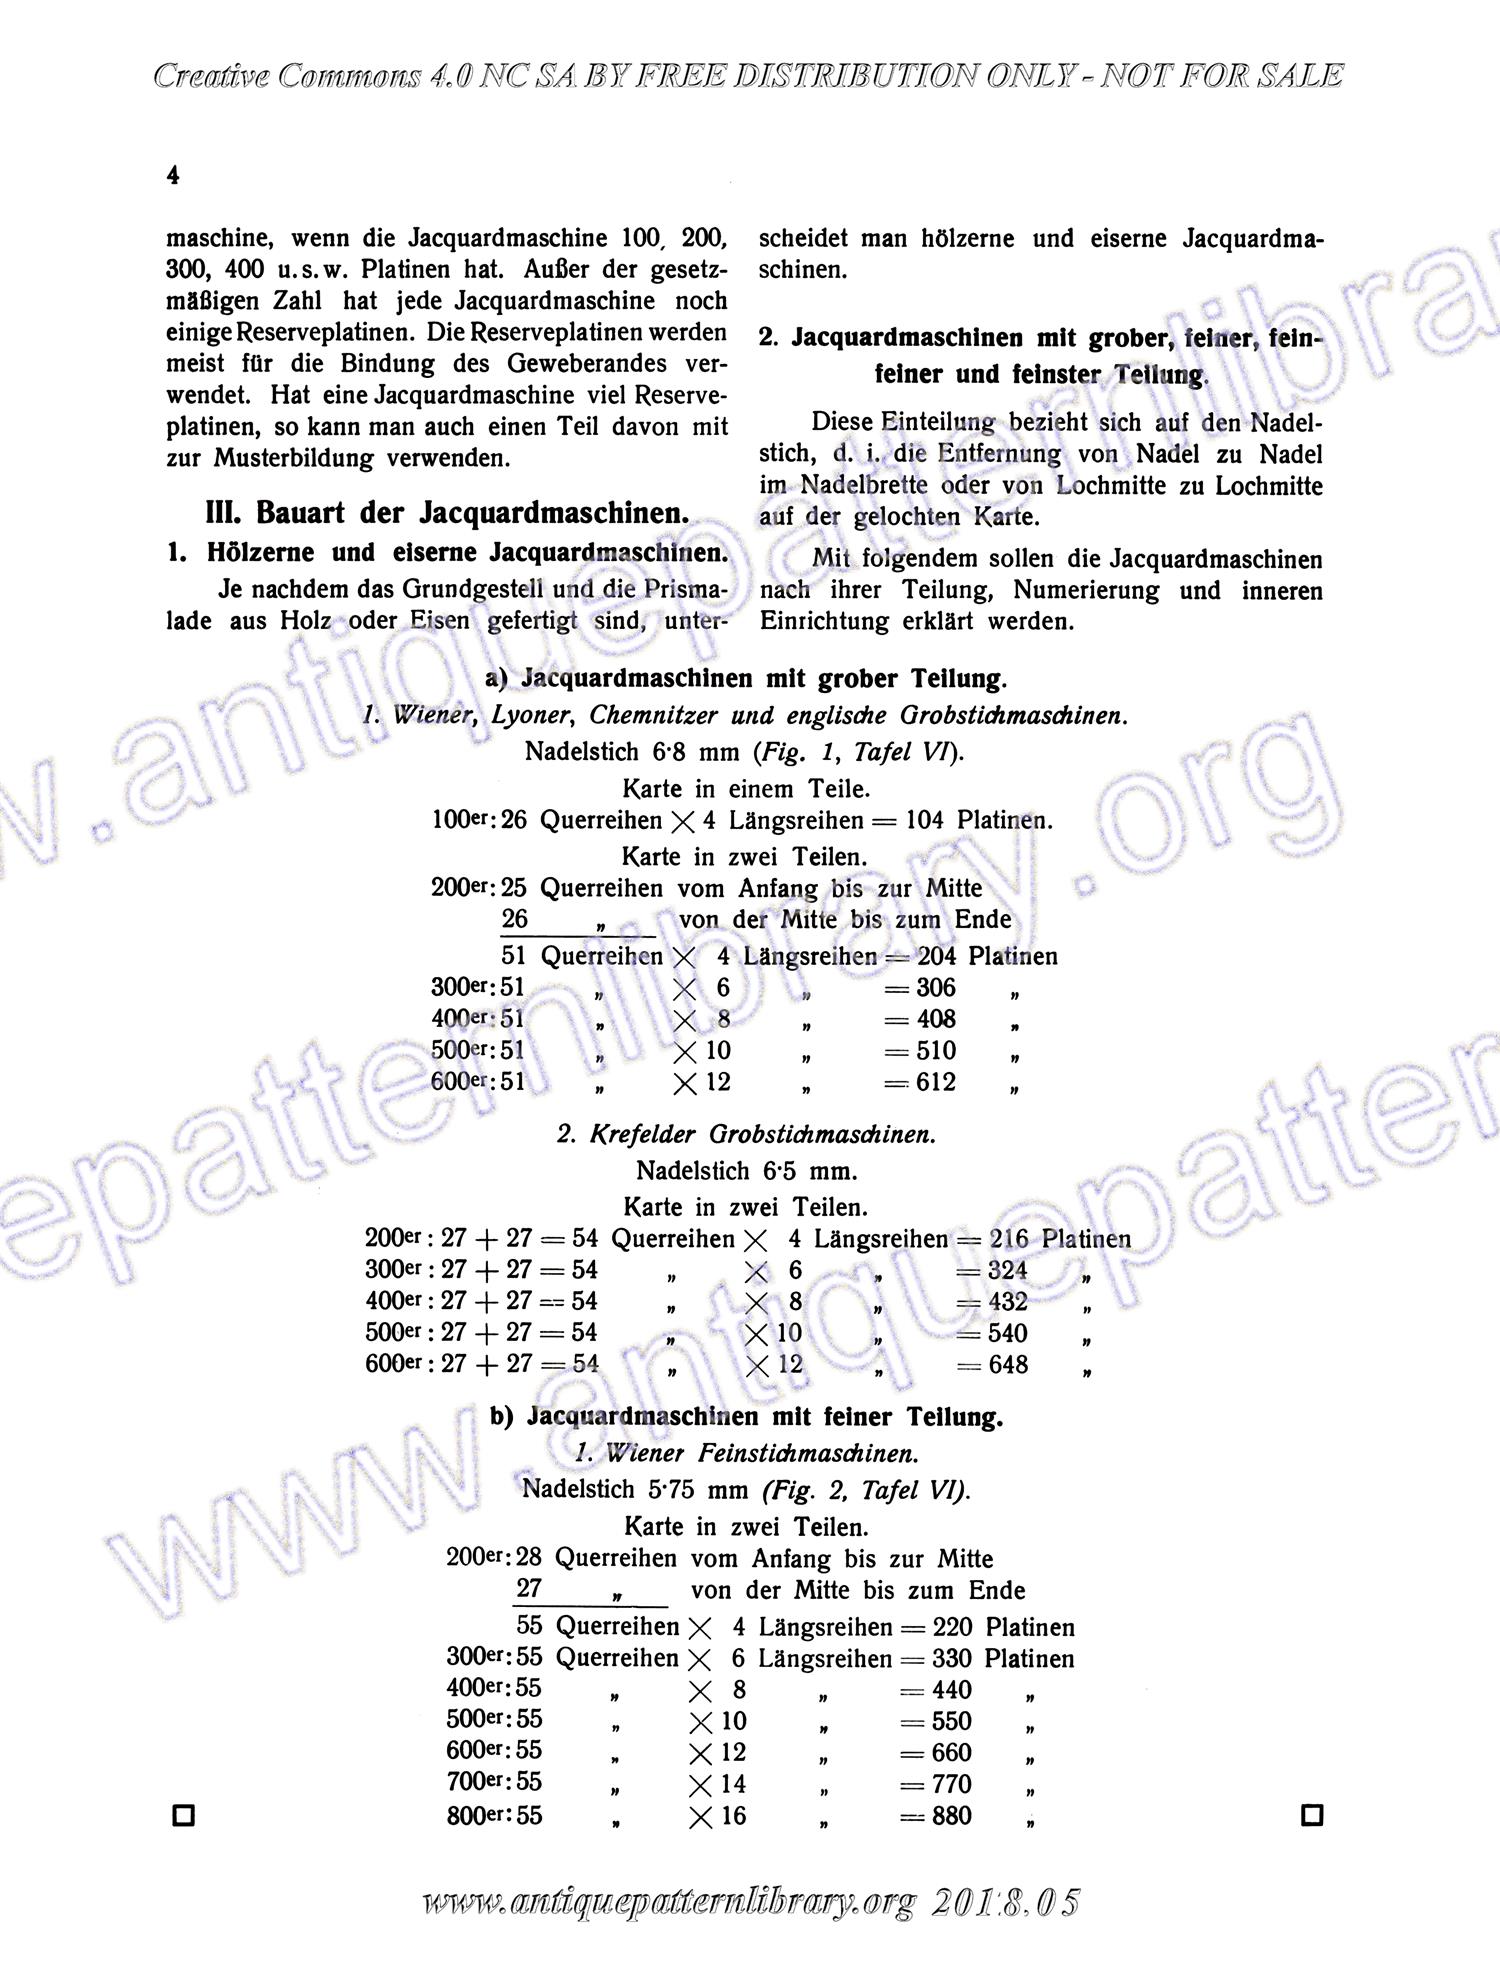 I-WM001 Technologie, Bindungslehre, Dekomposition und Kalkulation der Jacquard-Weberei